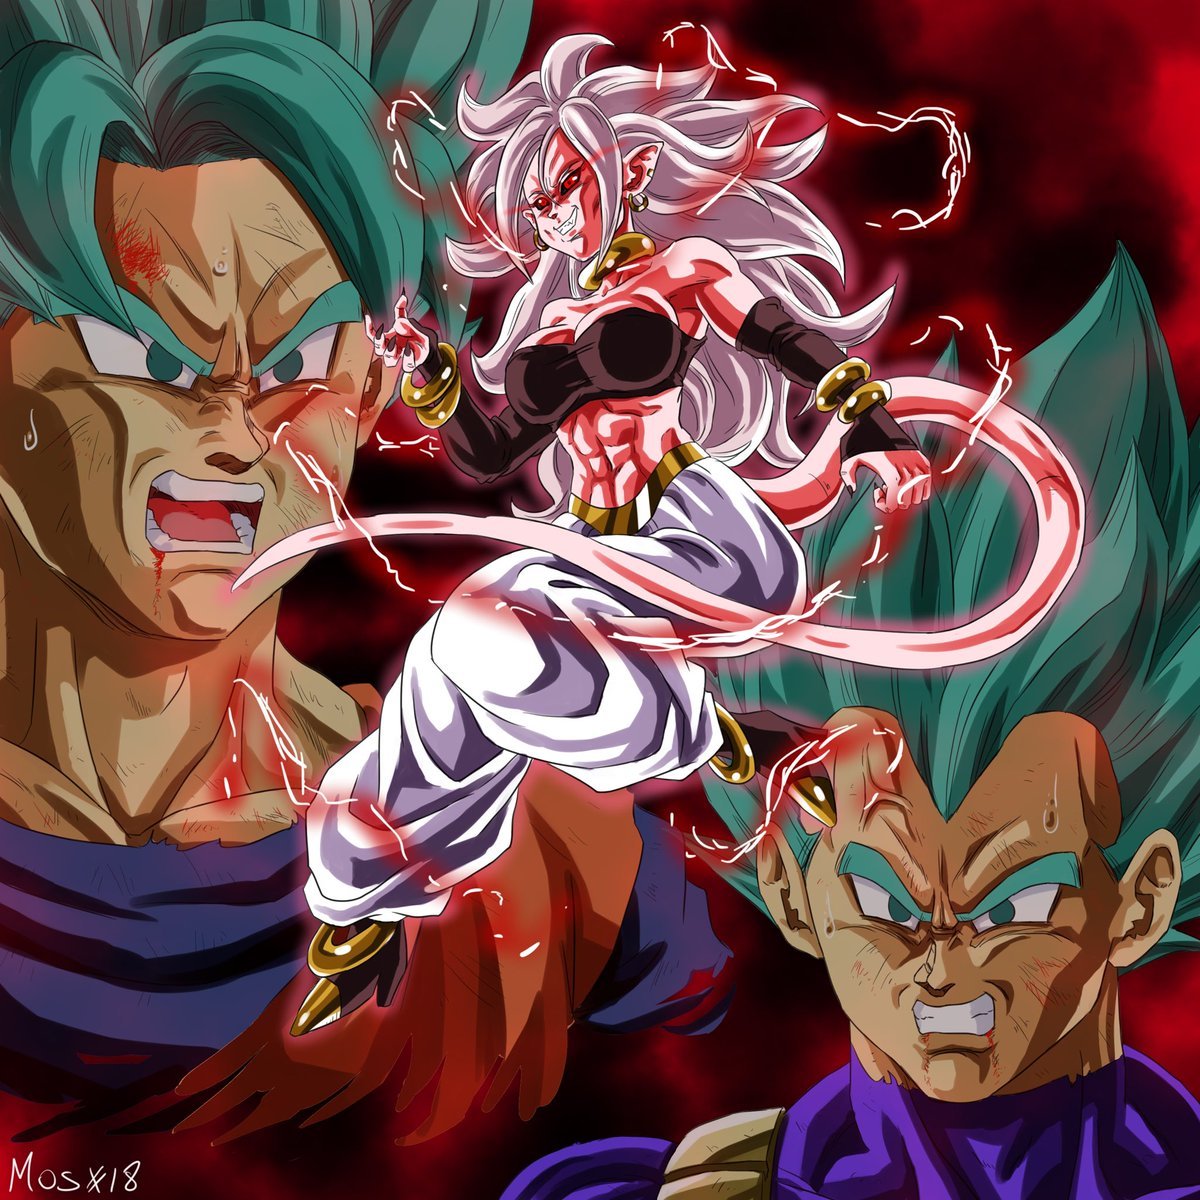 Ruttsu-the-super-elite-saiyan — Majin Android 21 vs SSJB Goku and Vegeta